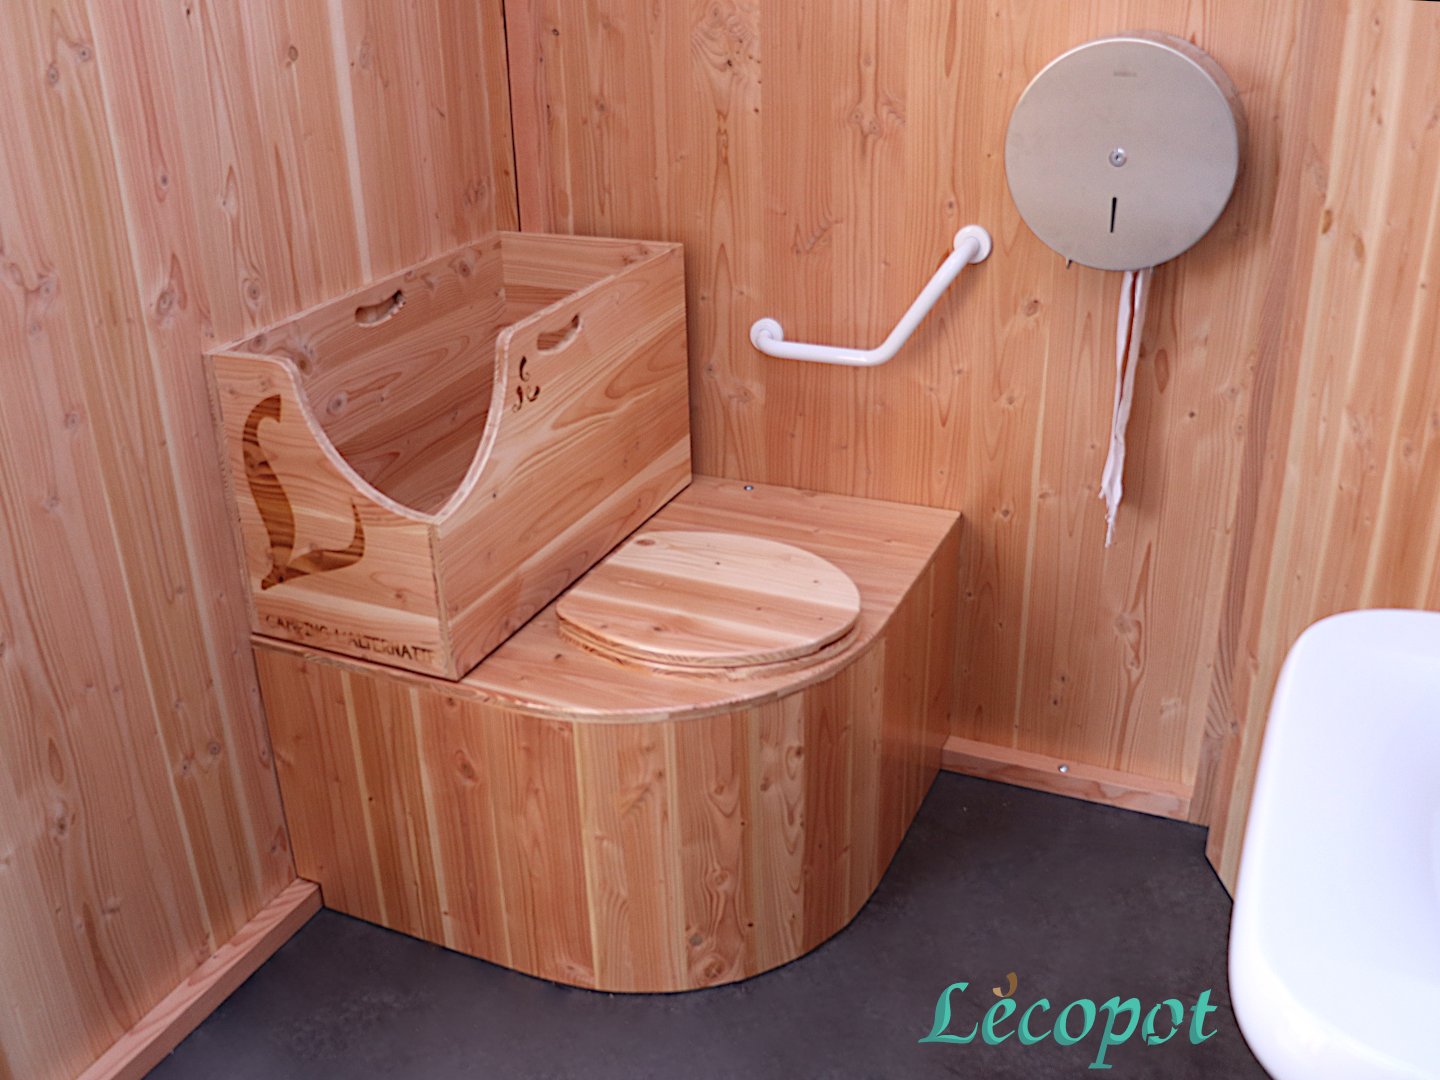 Ephysia - Toilette sèche ergonomique Lécopot